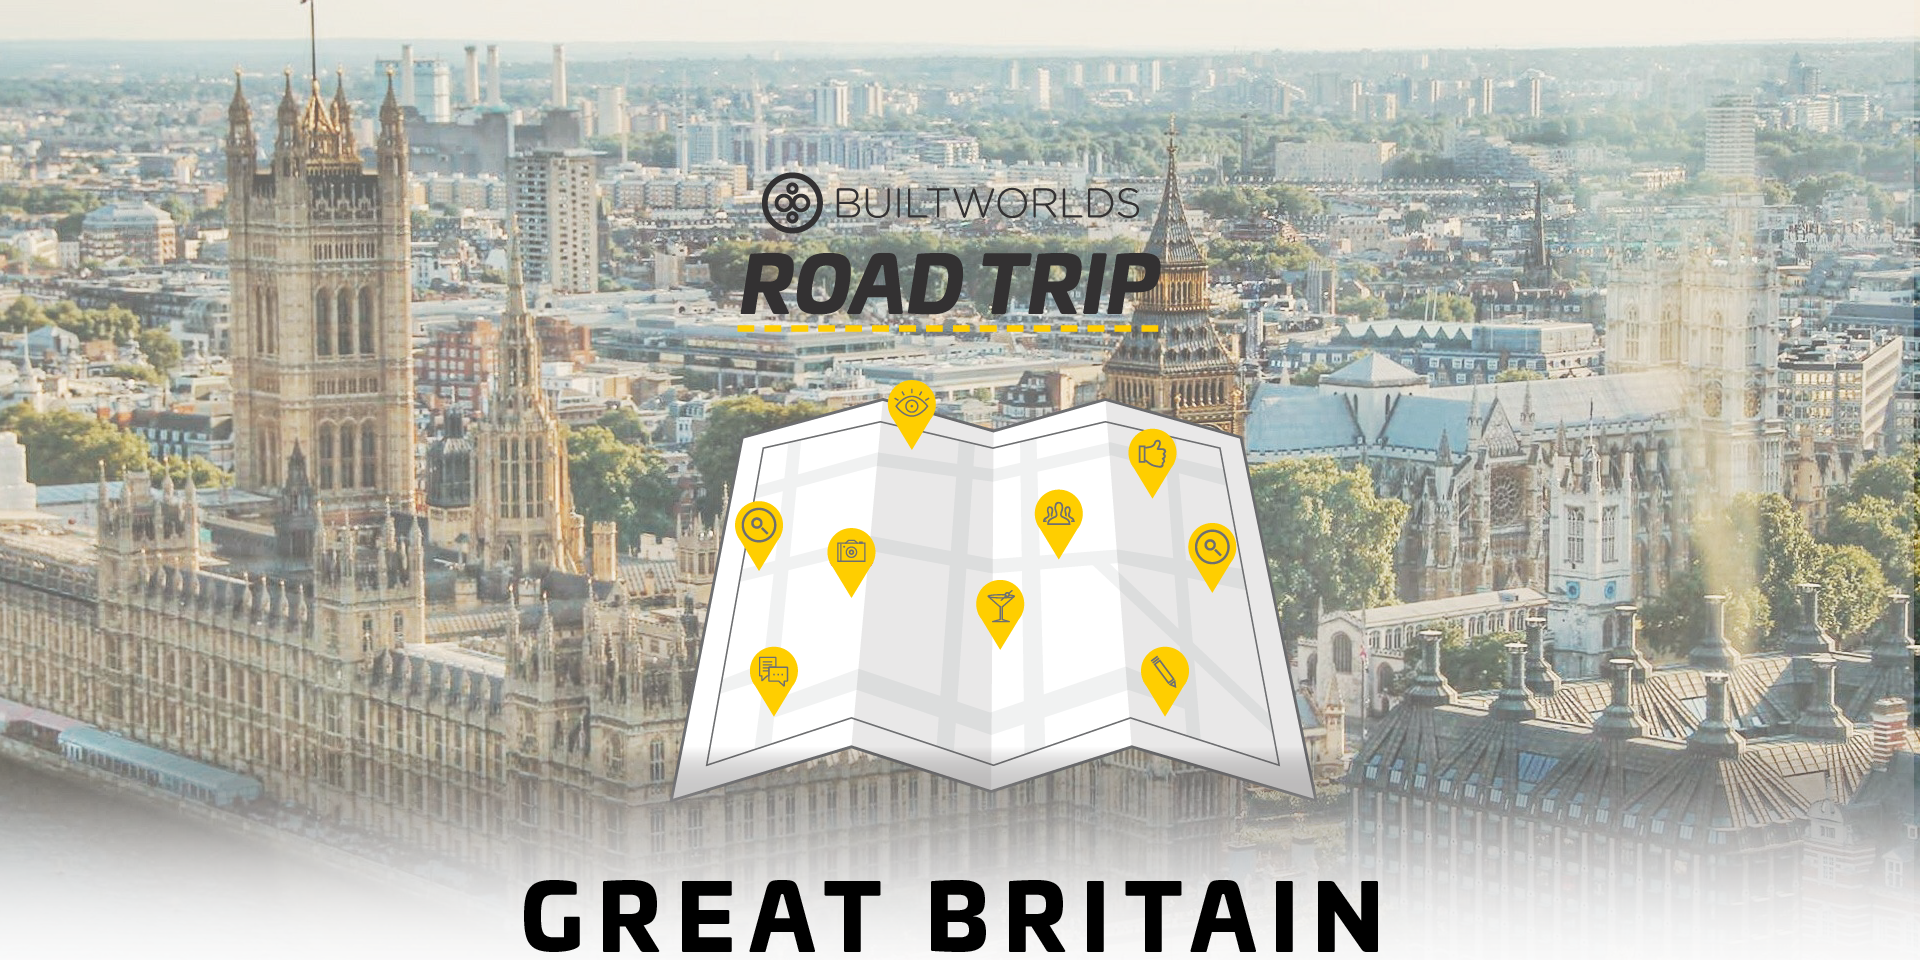 Great Britain BuiltWorlds RoadTrip